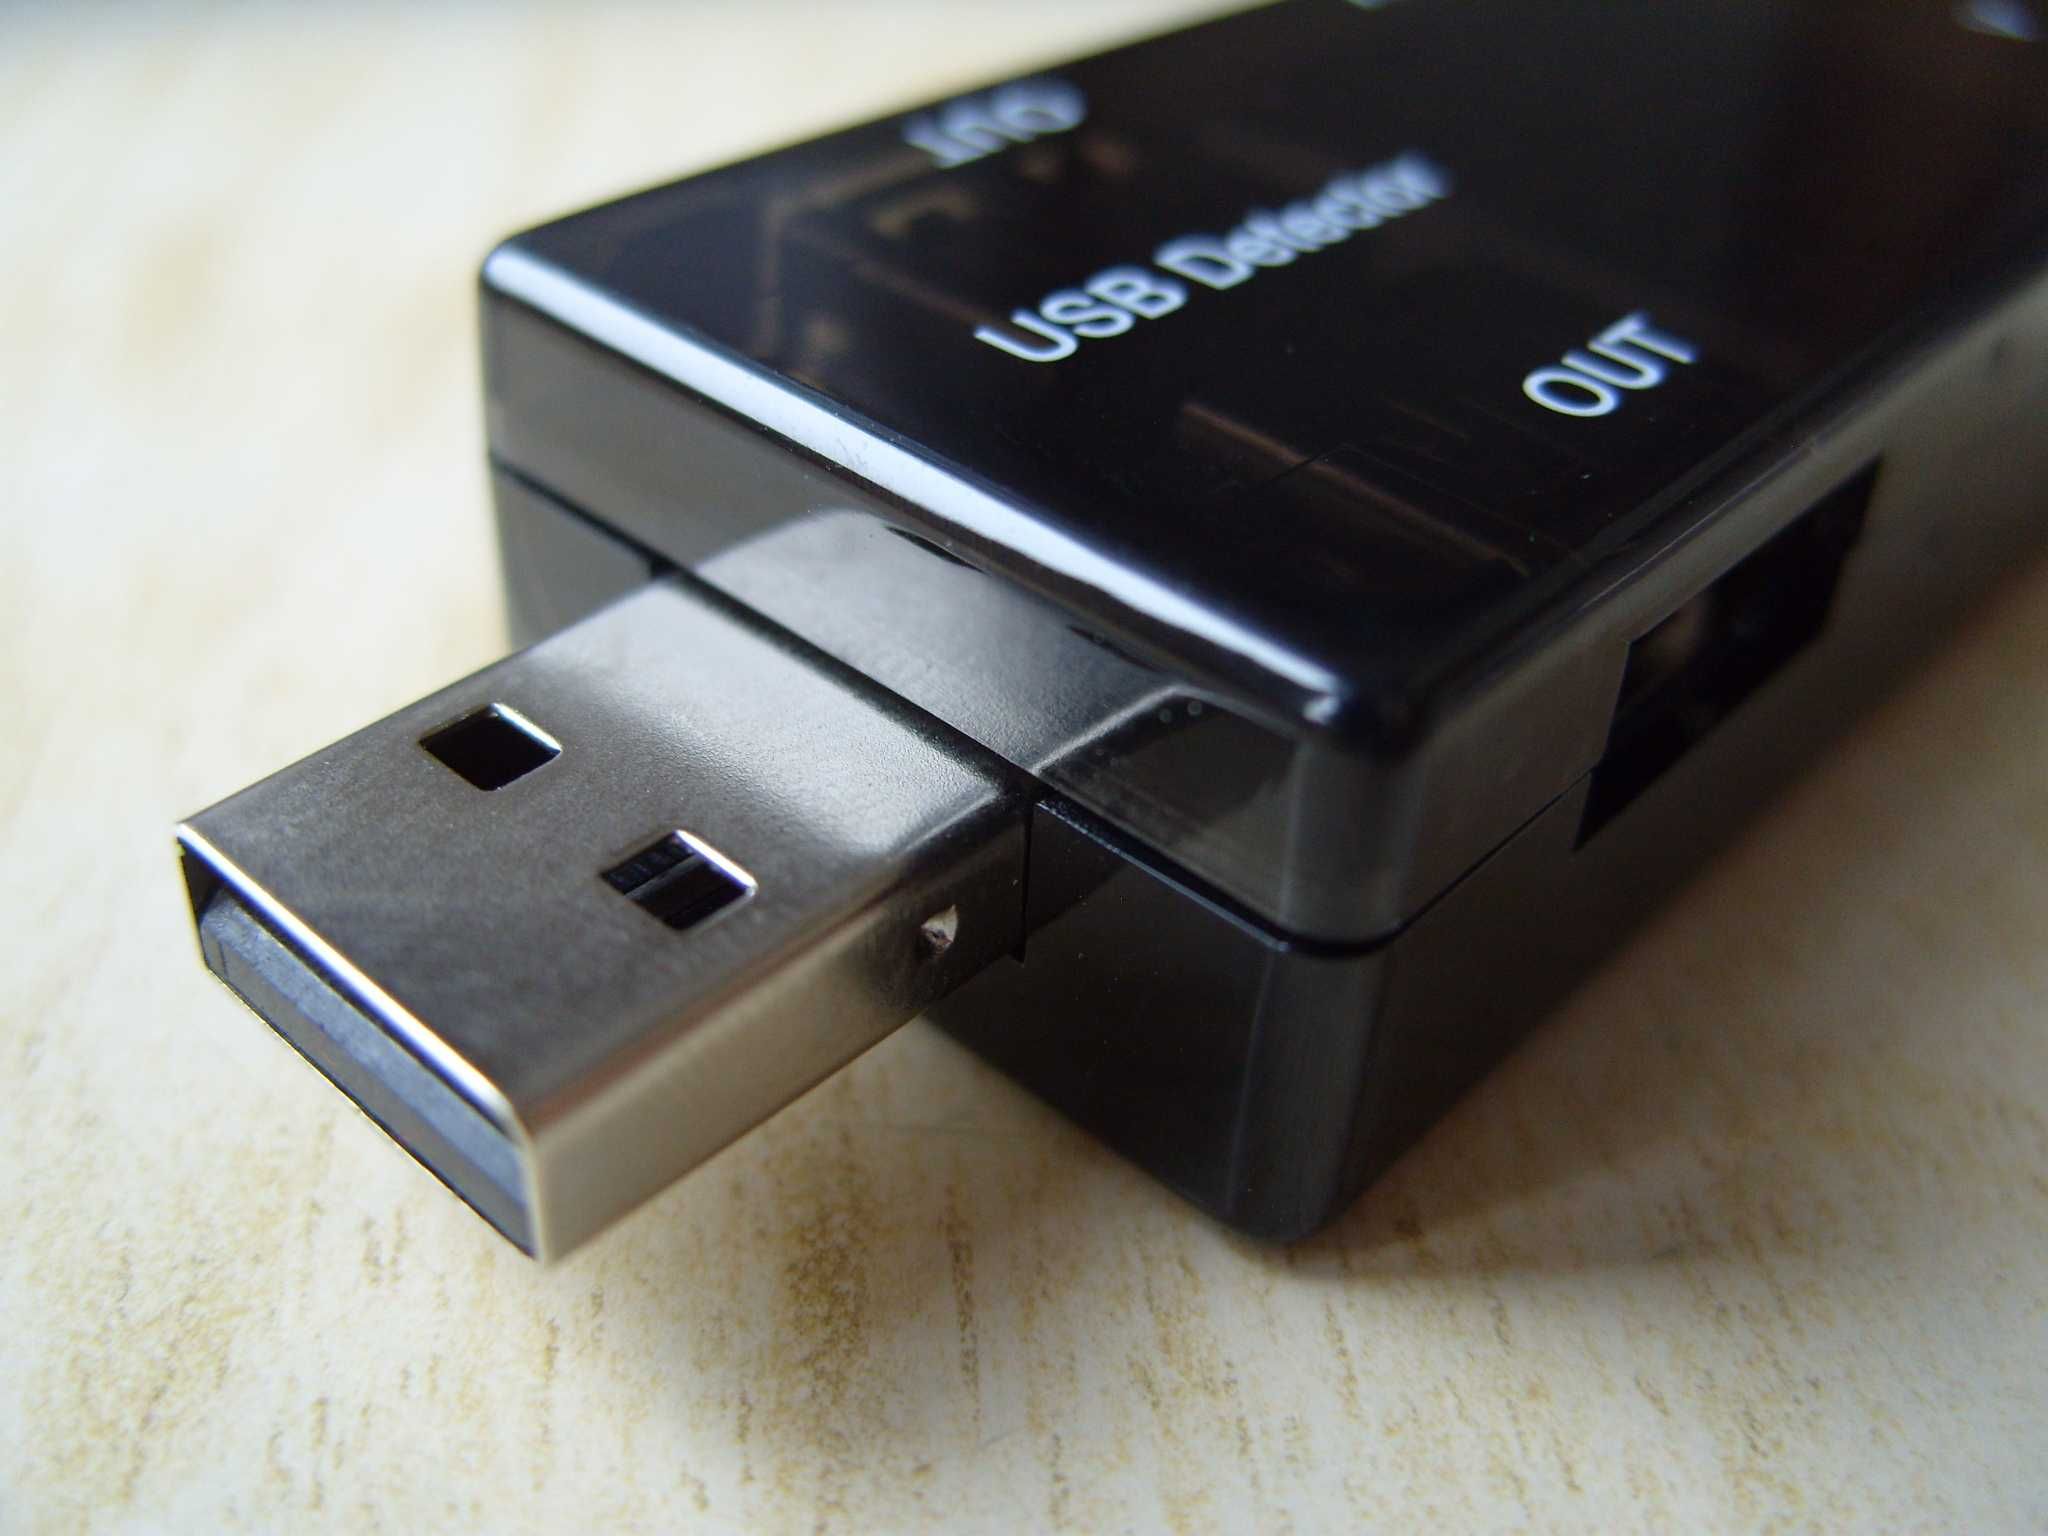 USB тестер-детектор с 2 извода KWS-10VA